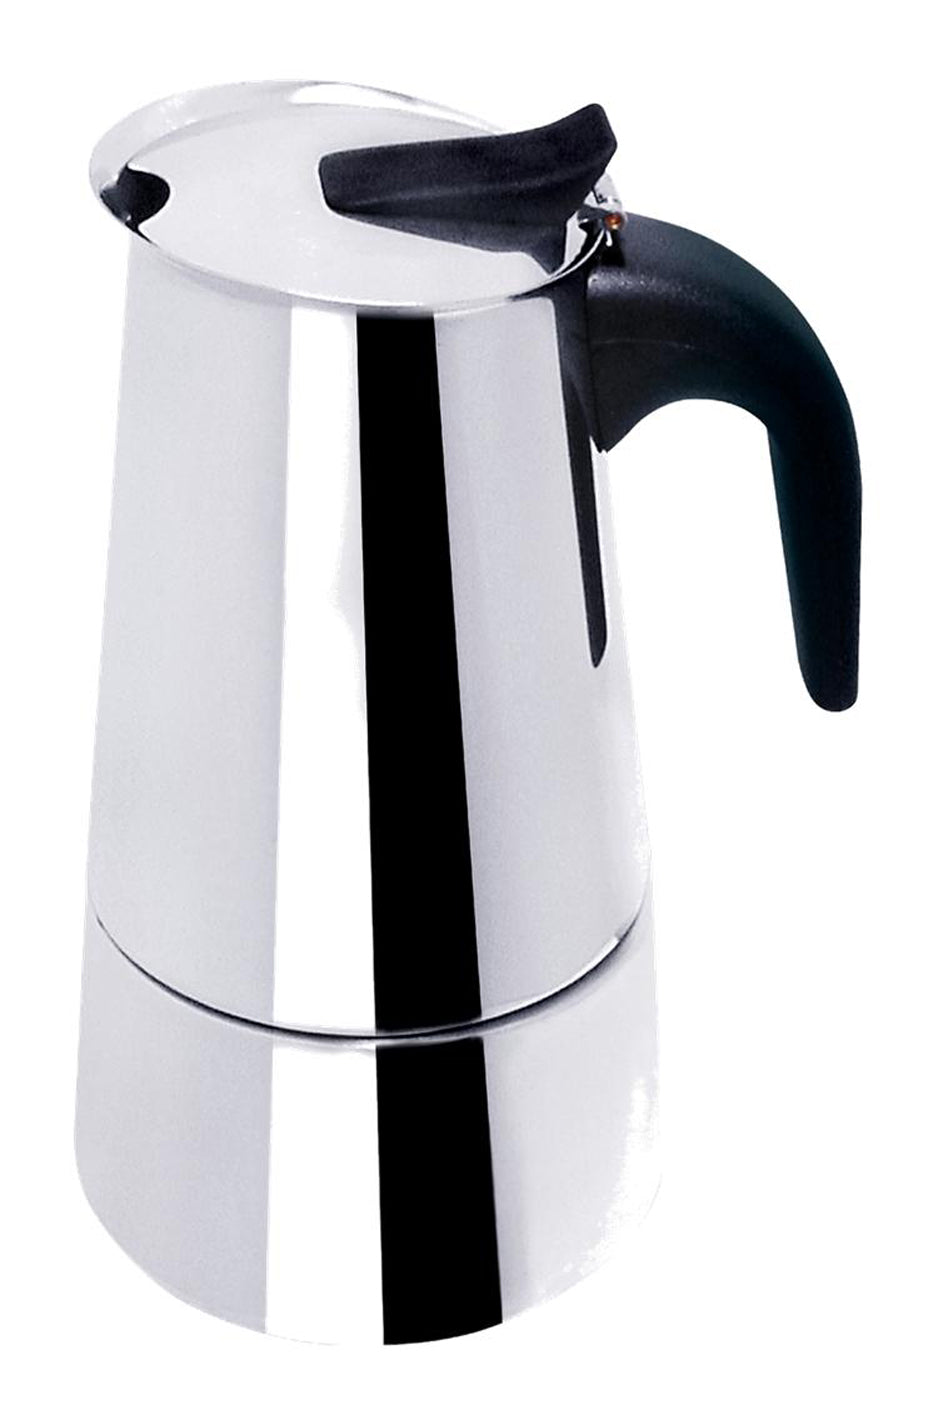  Bene Casa BC-99189 Espresso Maker, 4-Cup: Home & Kitchen